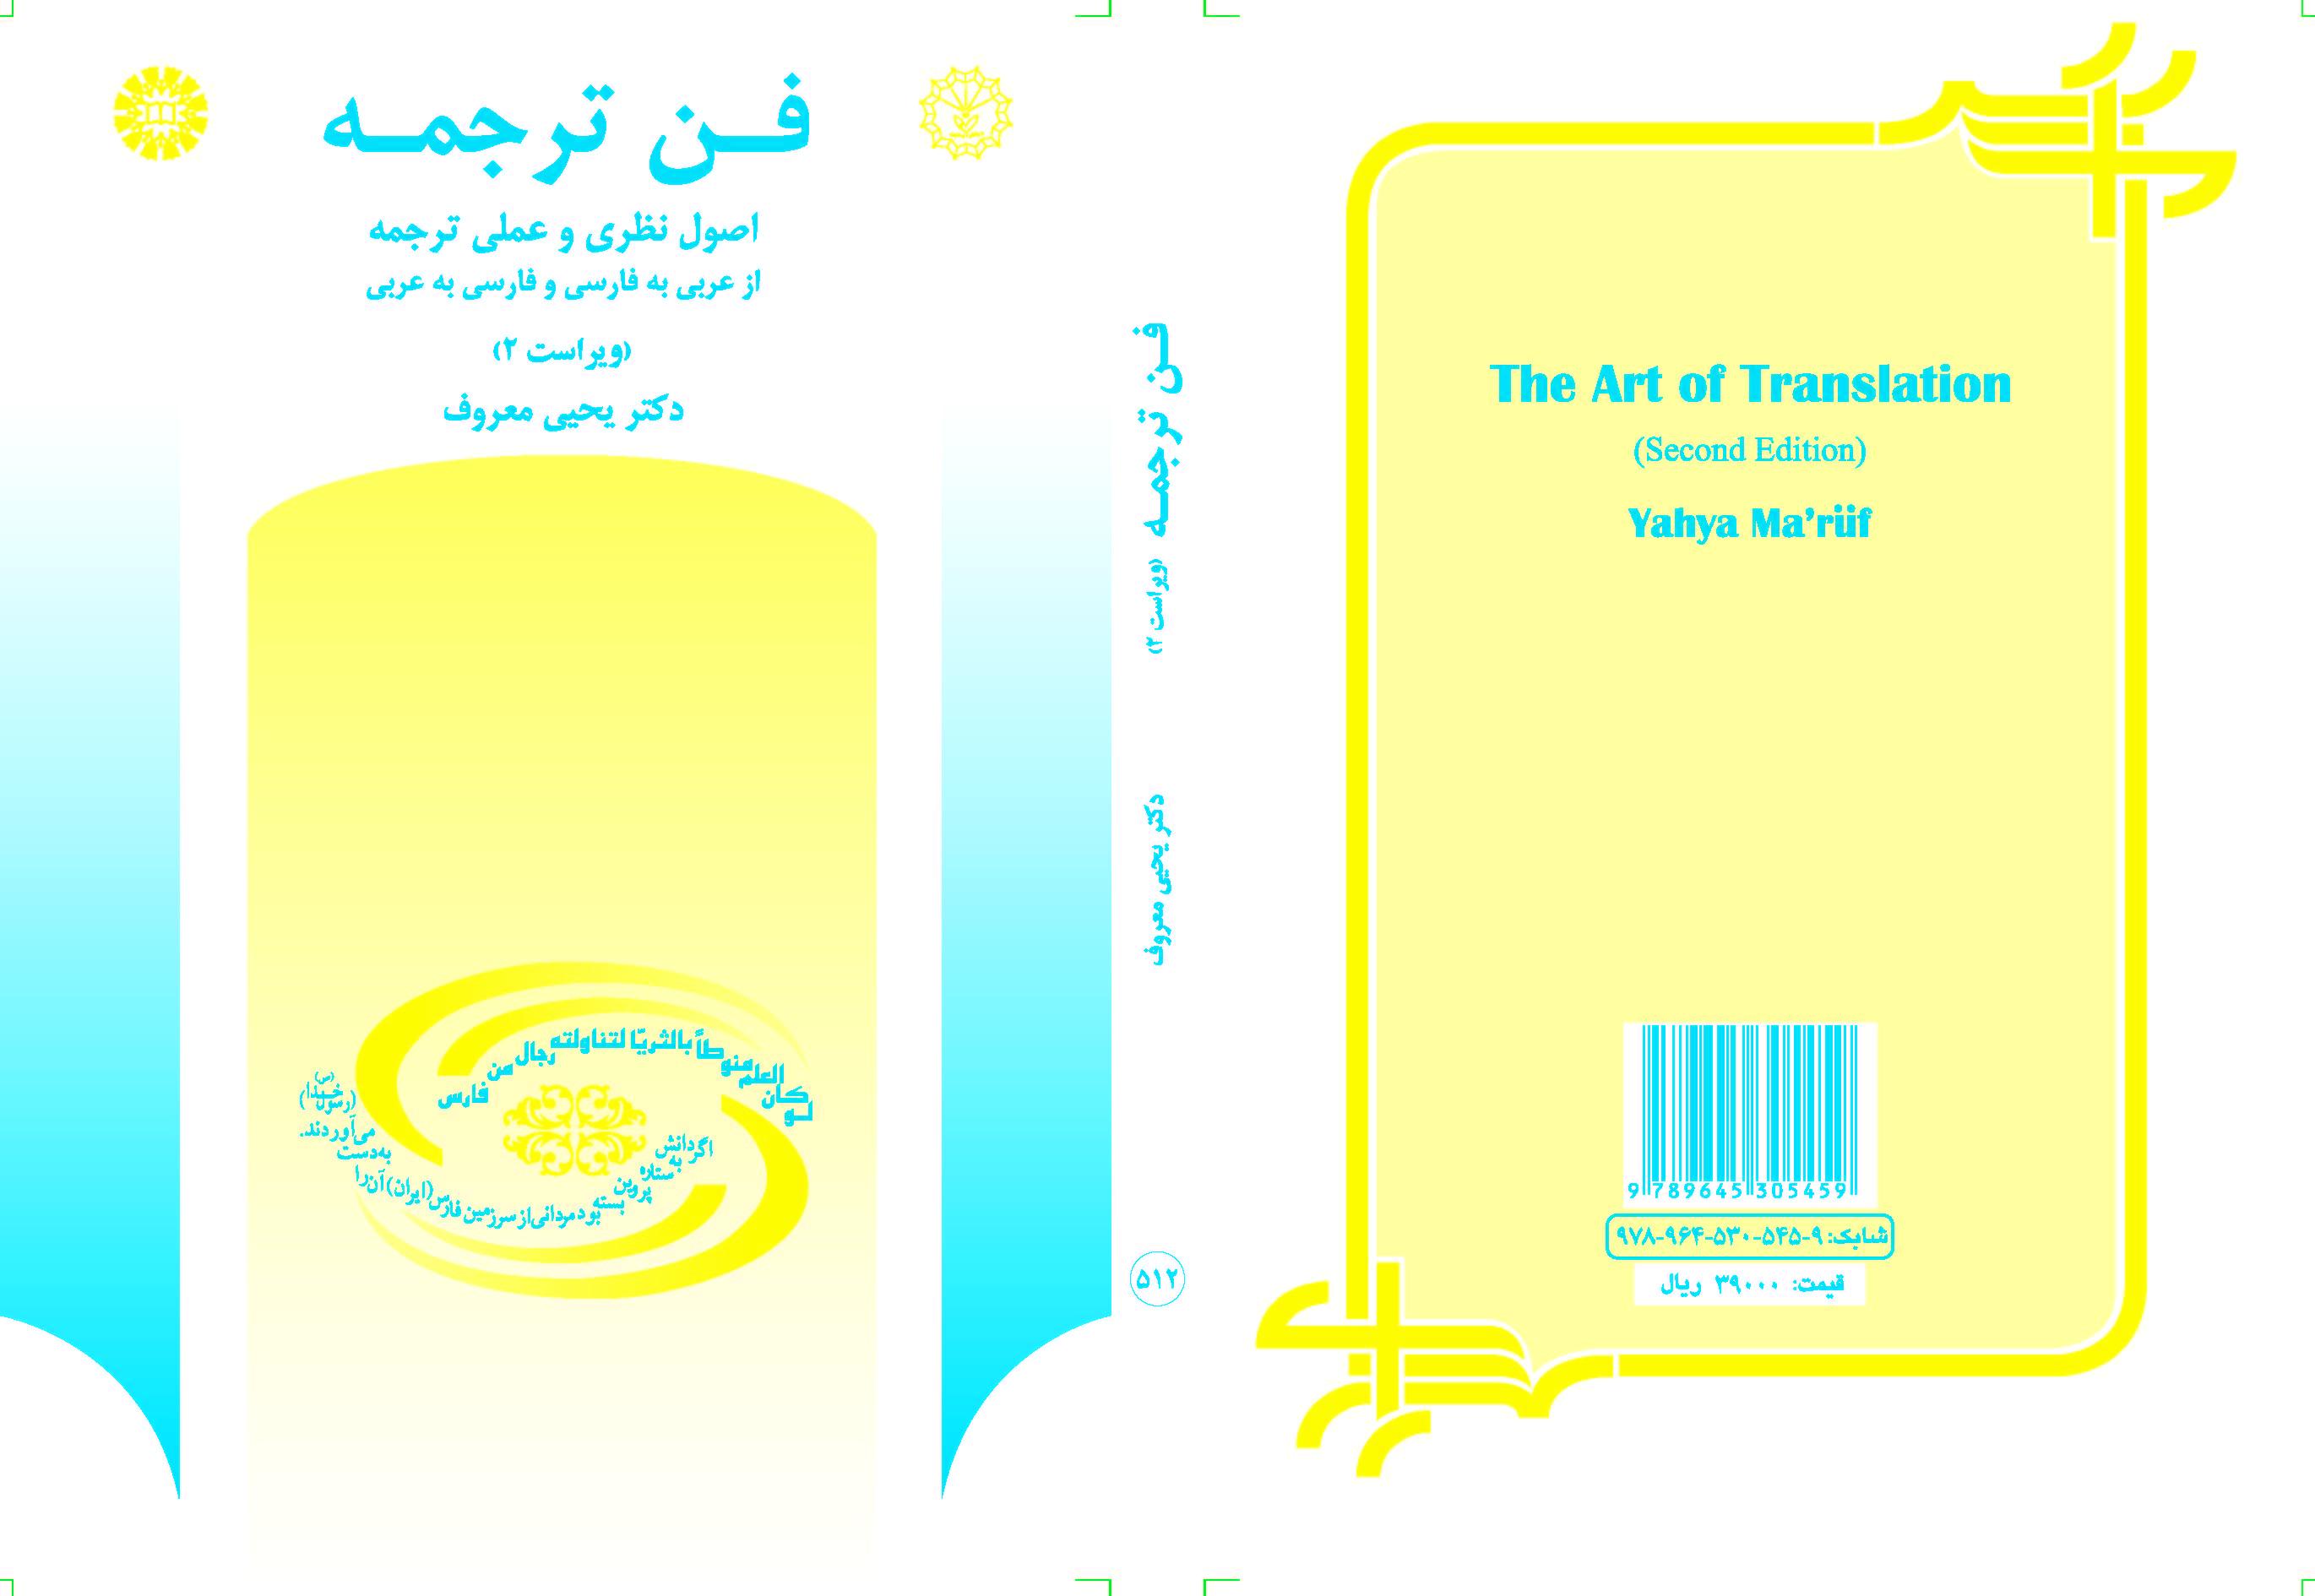 الأسس النظرية والتطبيقية للترجمة من العربية إلى الفارسية وبالعكس